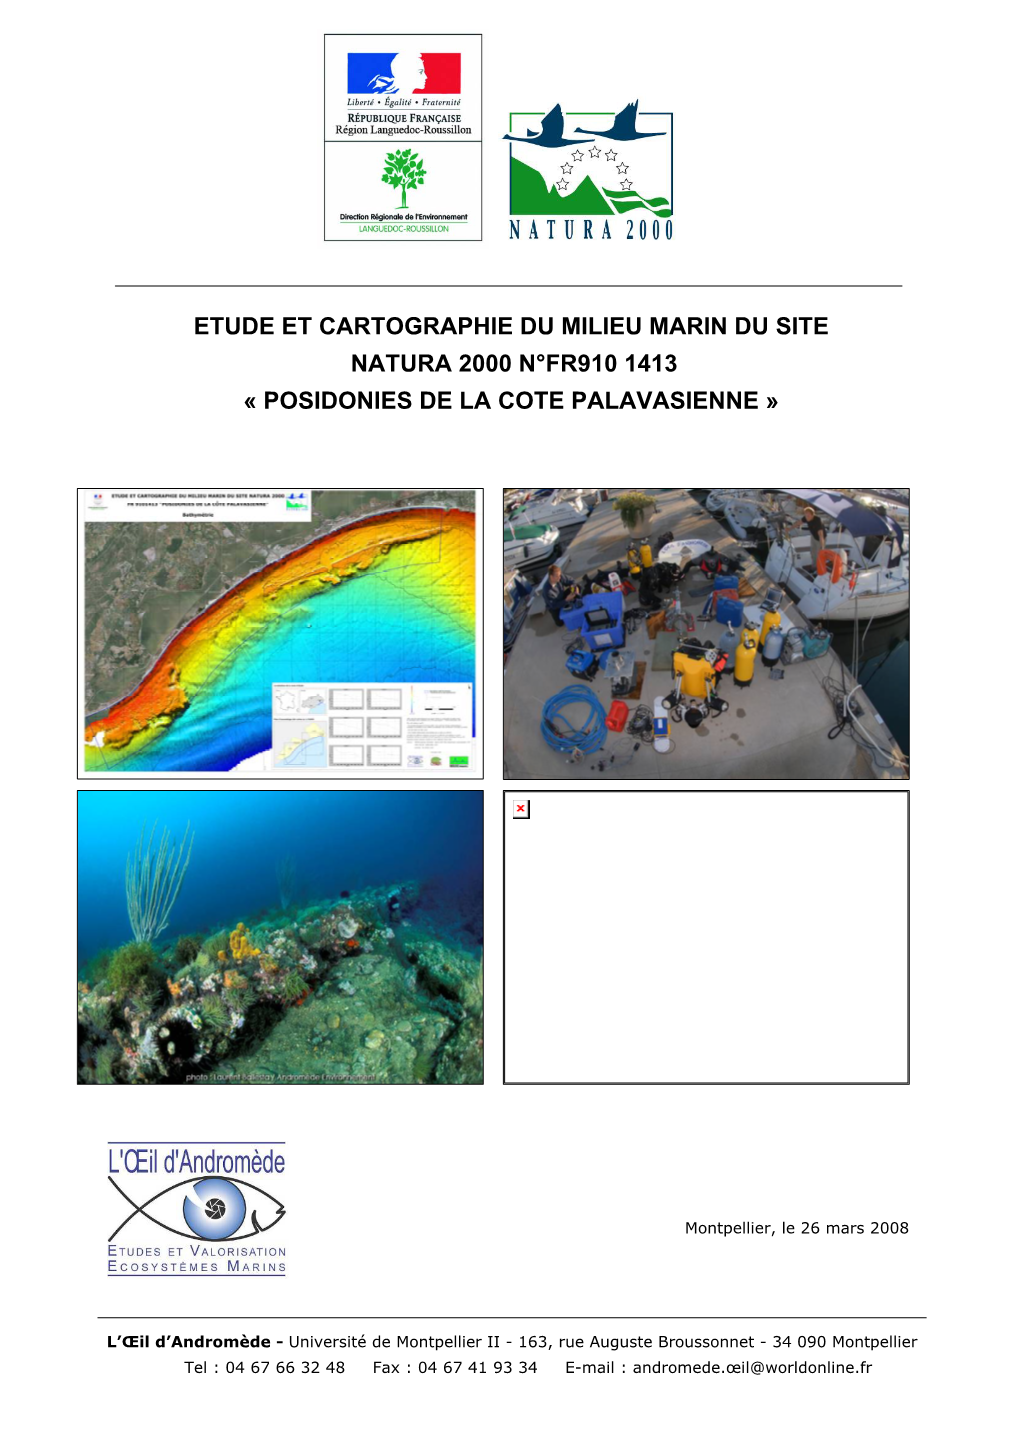 Etude Et Cartographie Du Milieu Marin Du Site Natura 2000 « Posidonies De La Cote Palavasienne »